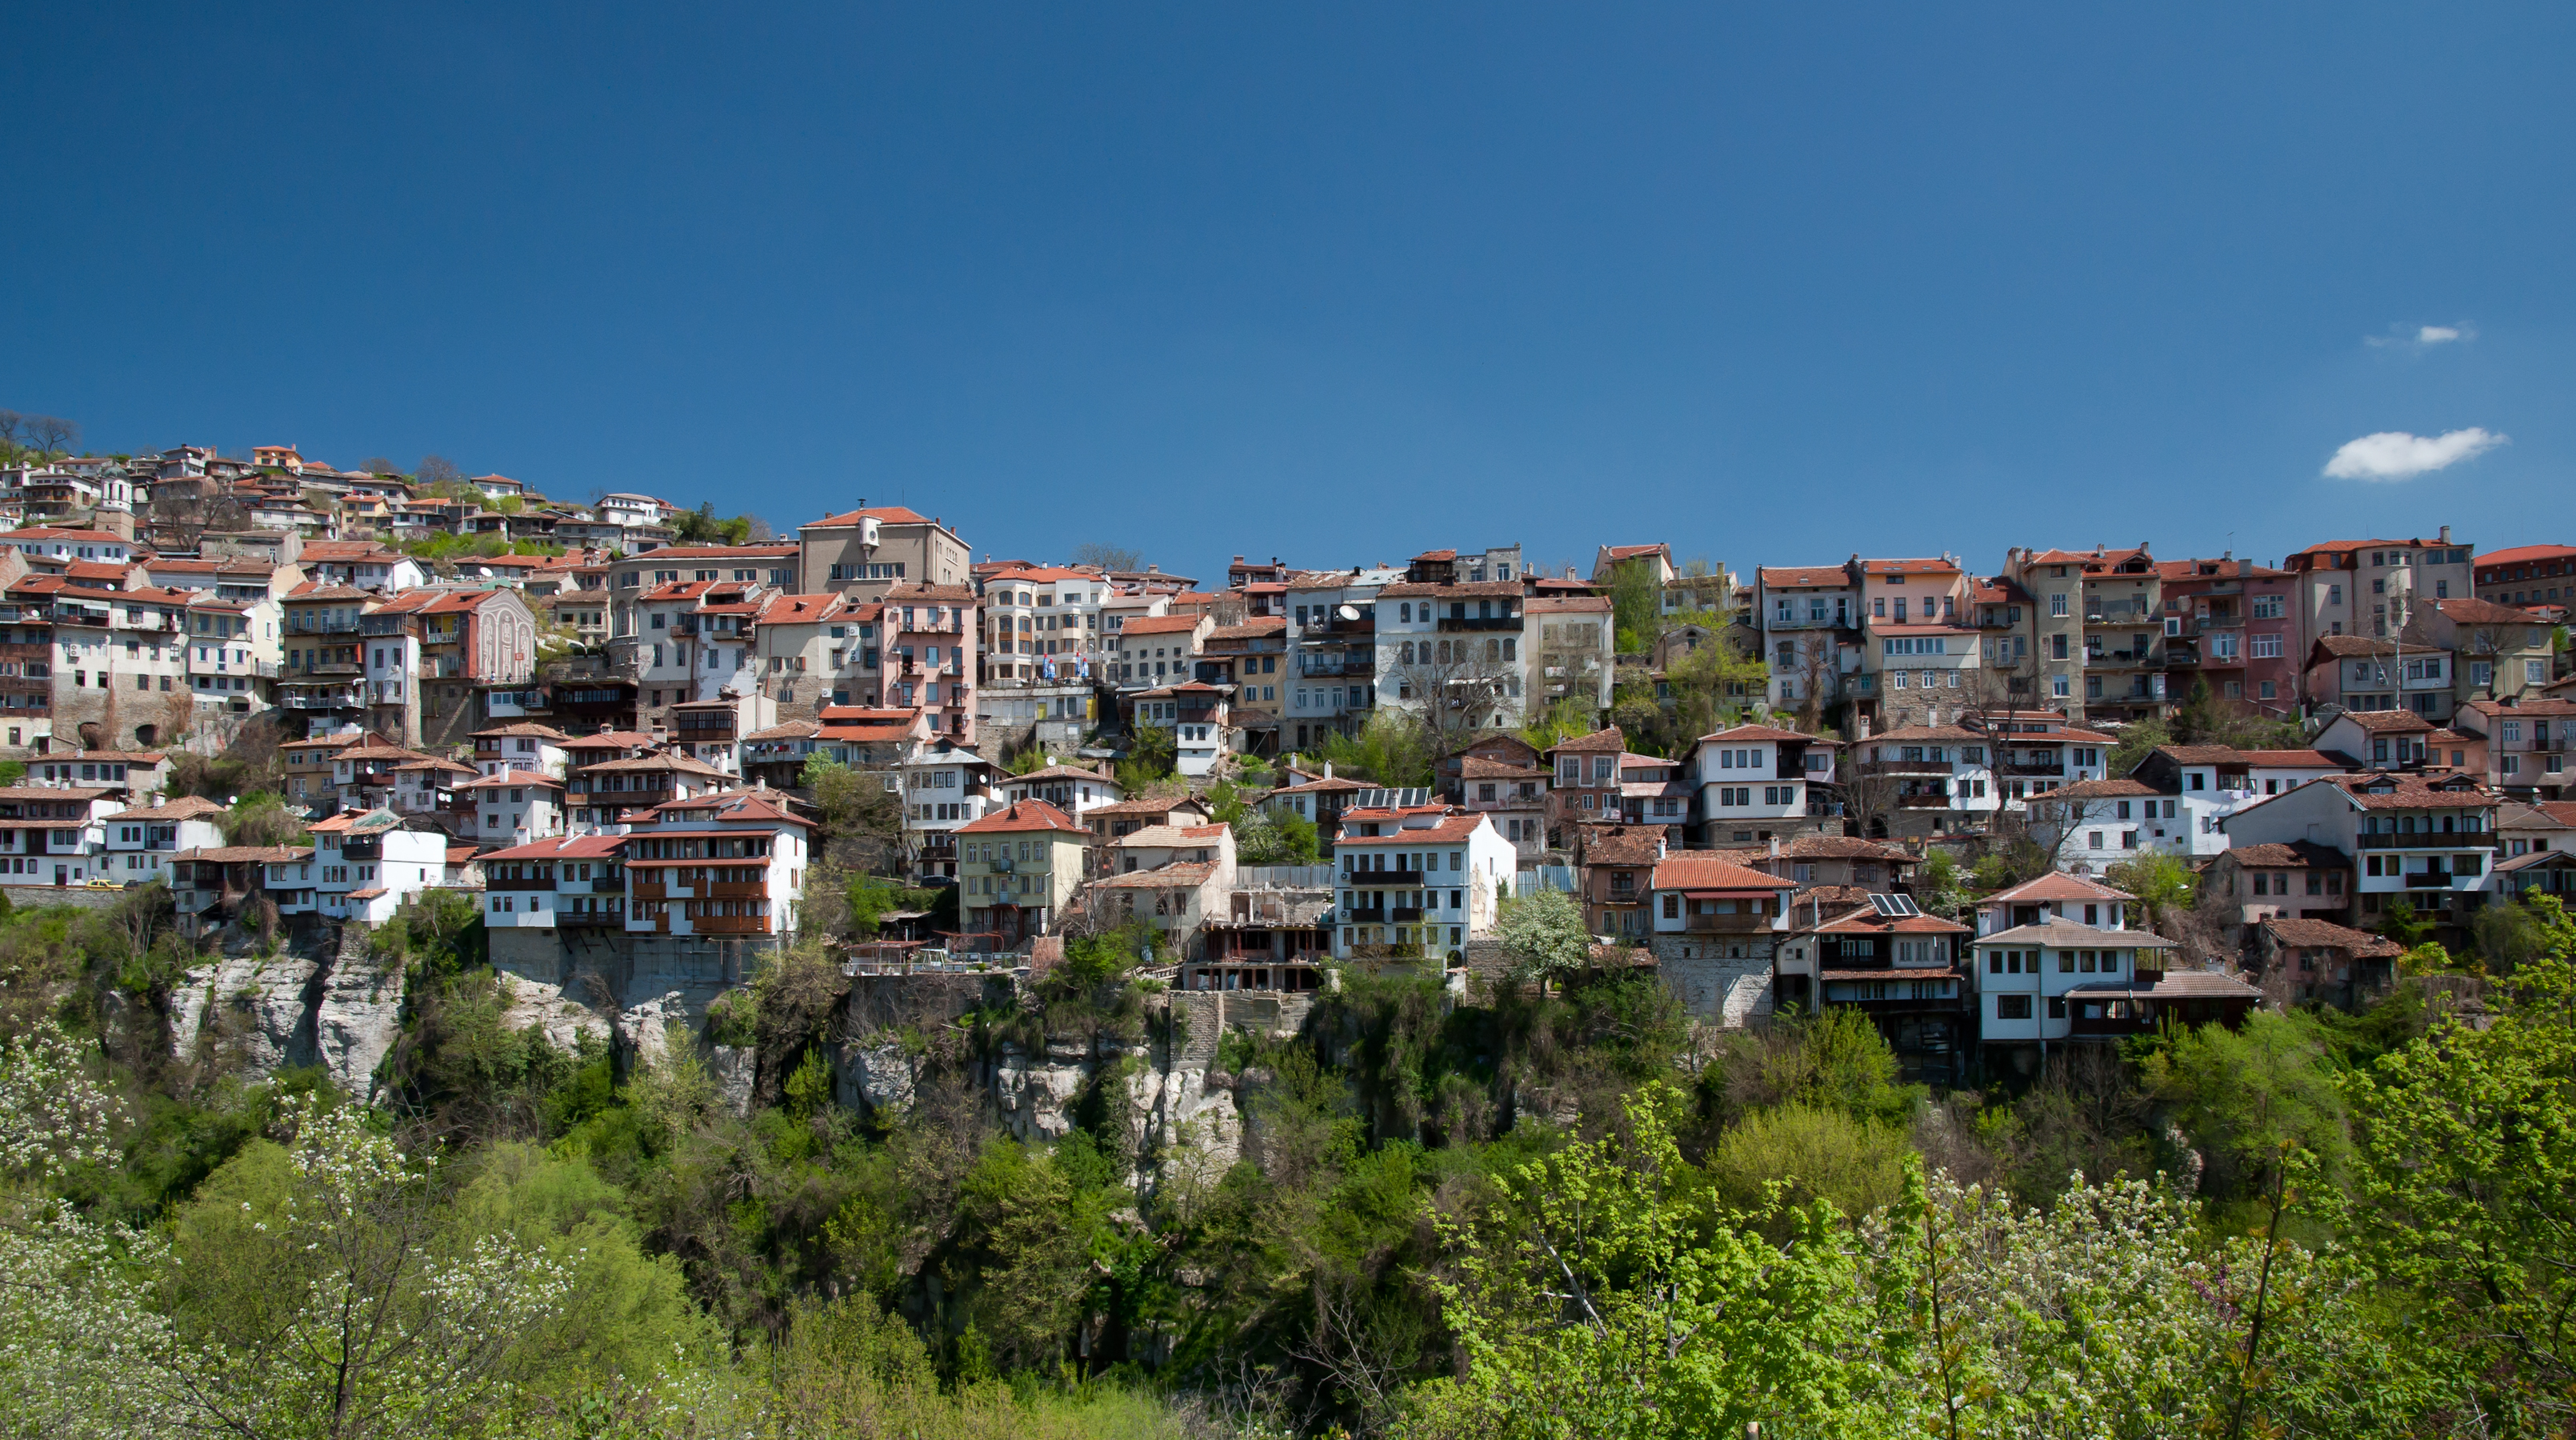 Veliko Tarnovo - Varosha quarter